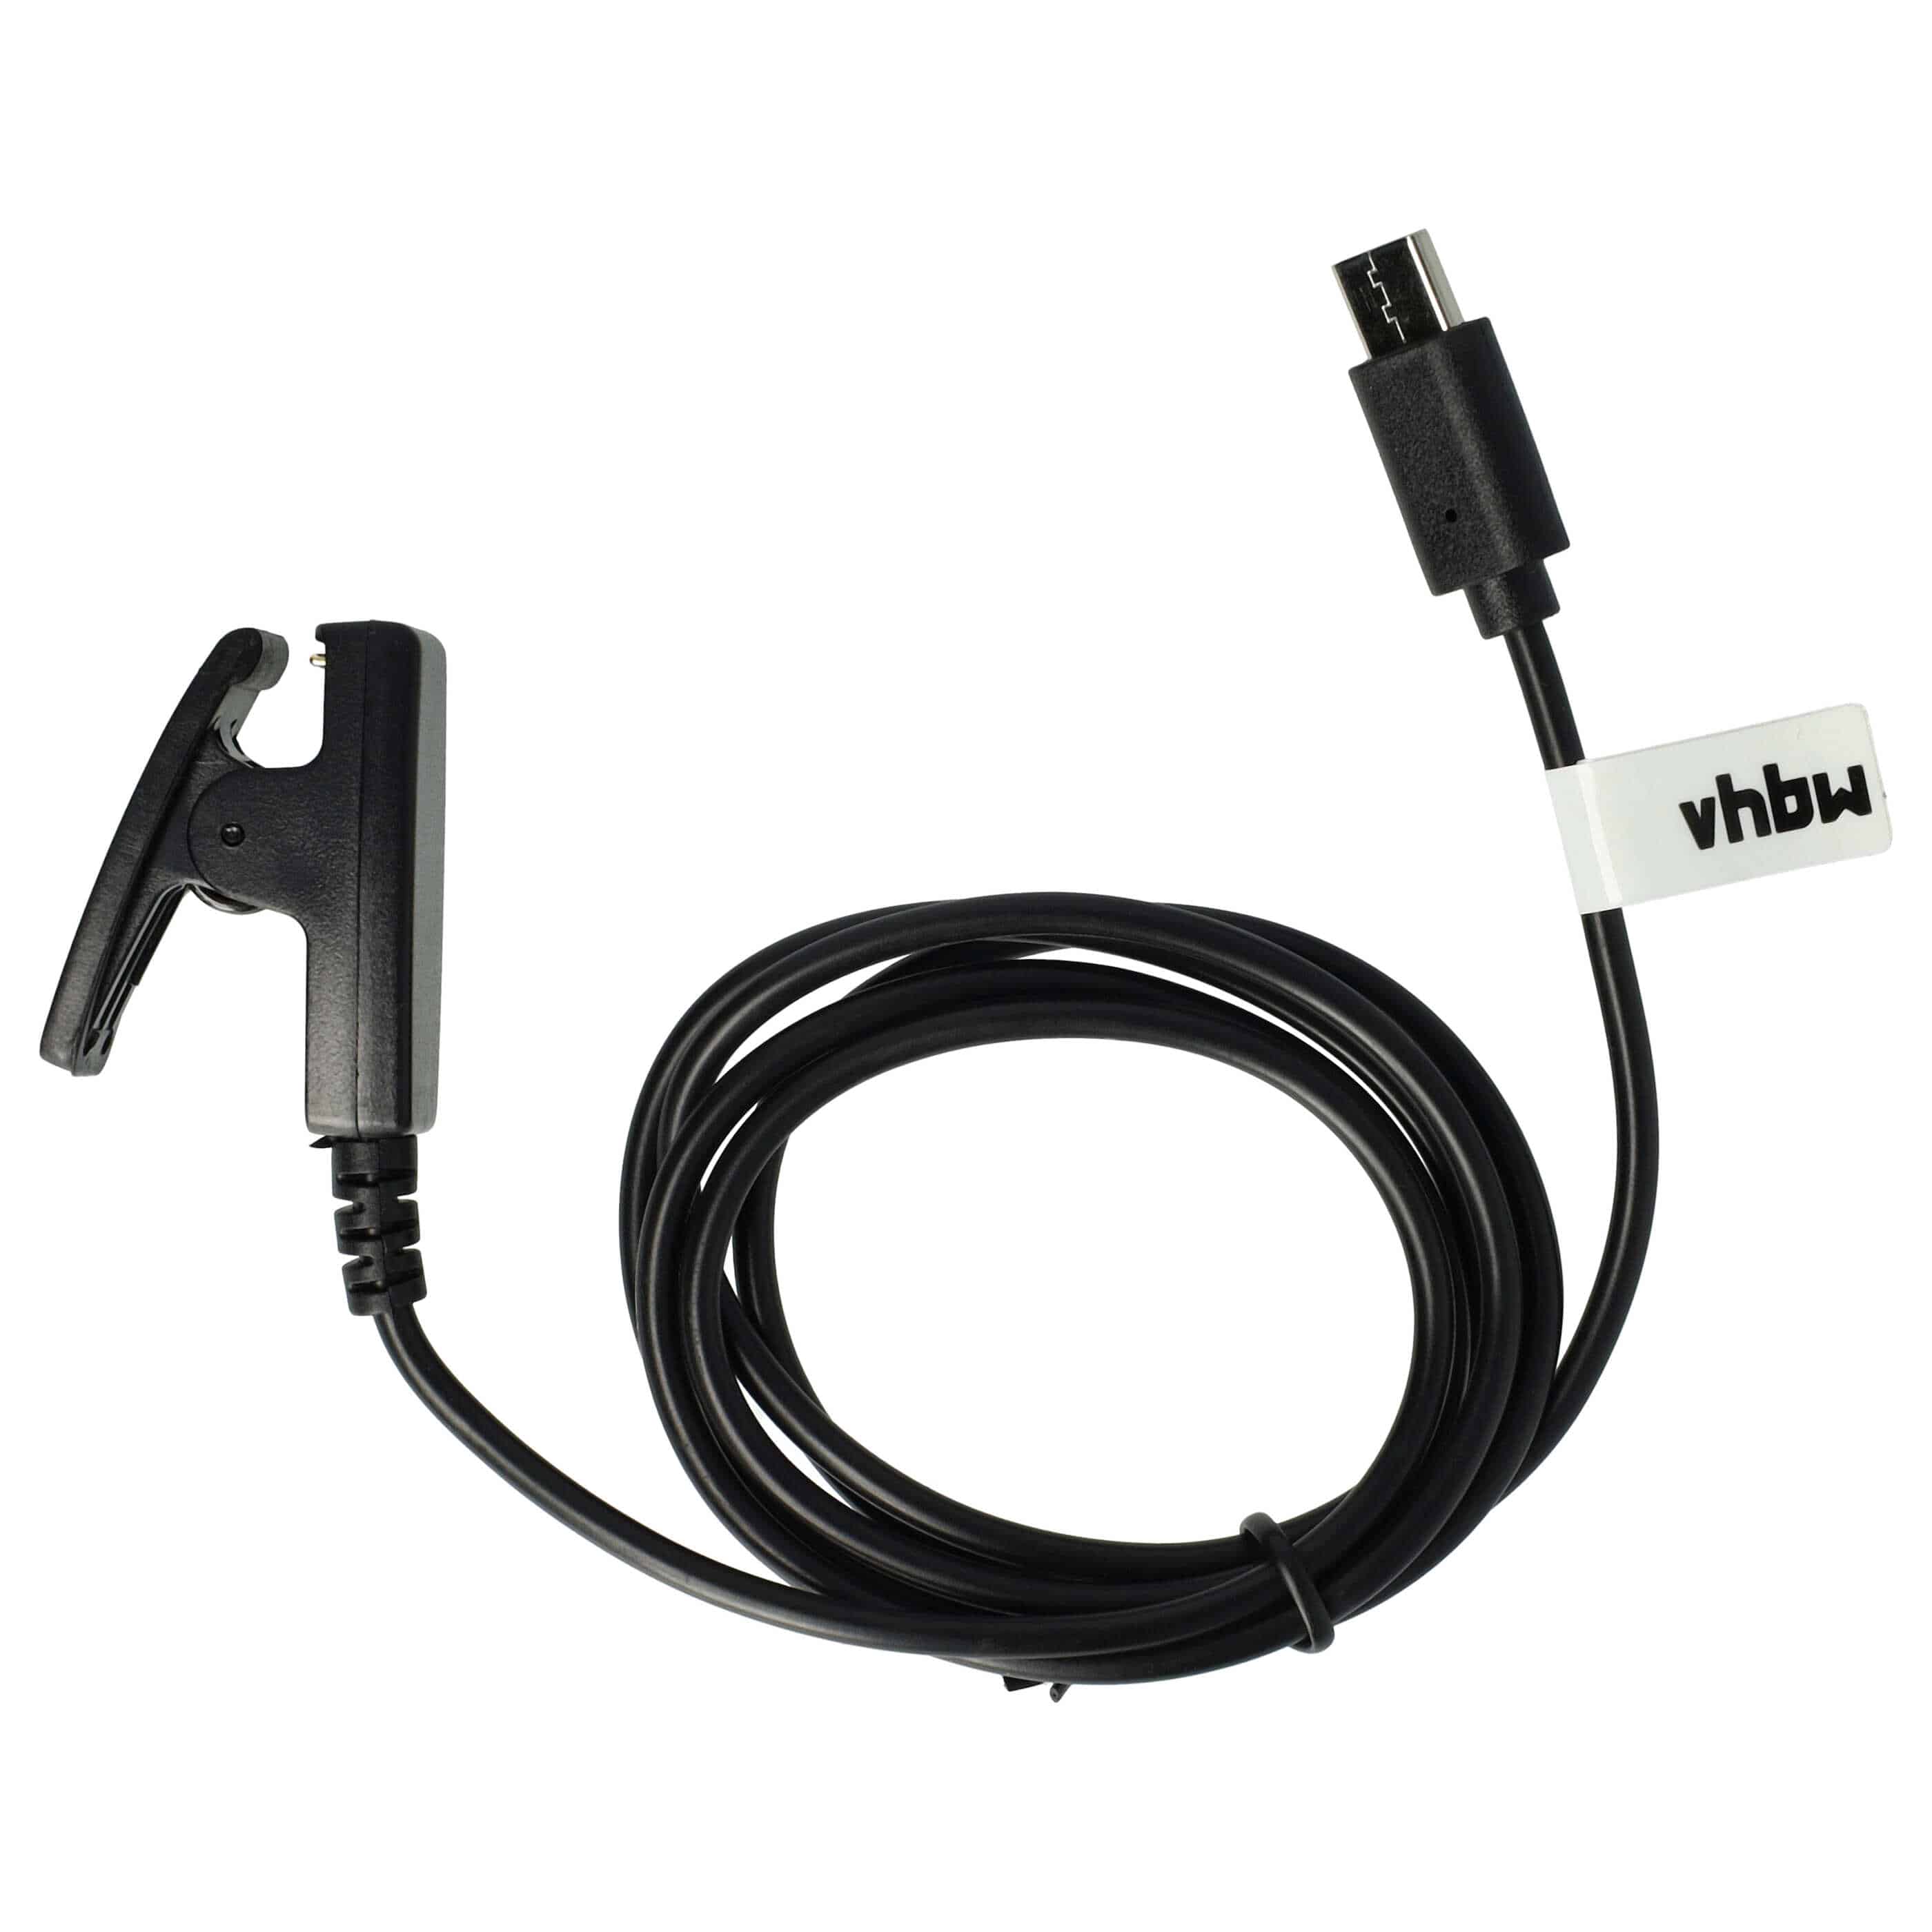 Ladekabel als Ersatz für Garmin 010-13289-00 - 100 cm Kabel, Mit USB-C-Kabel